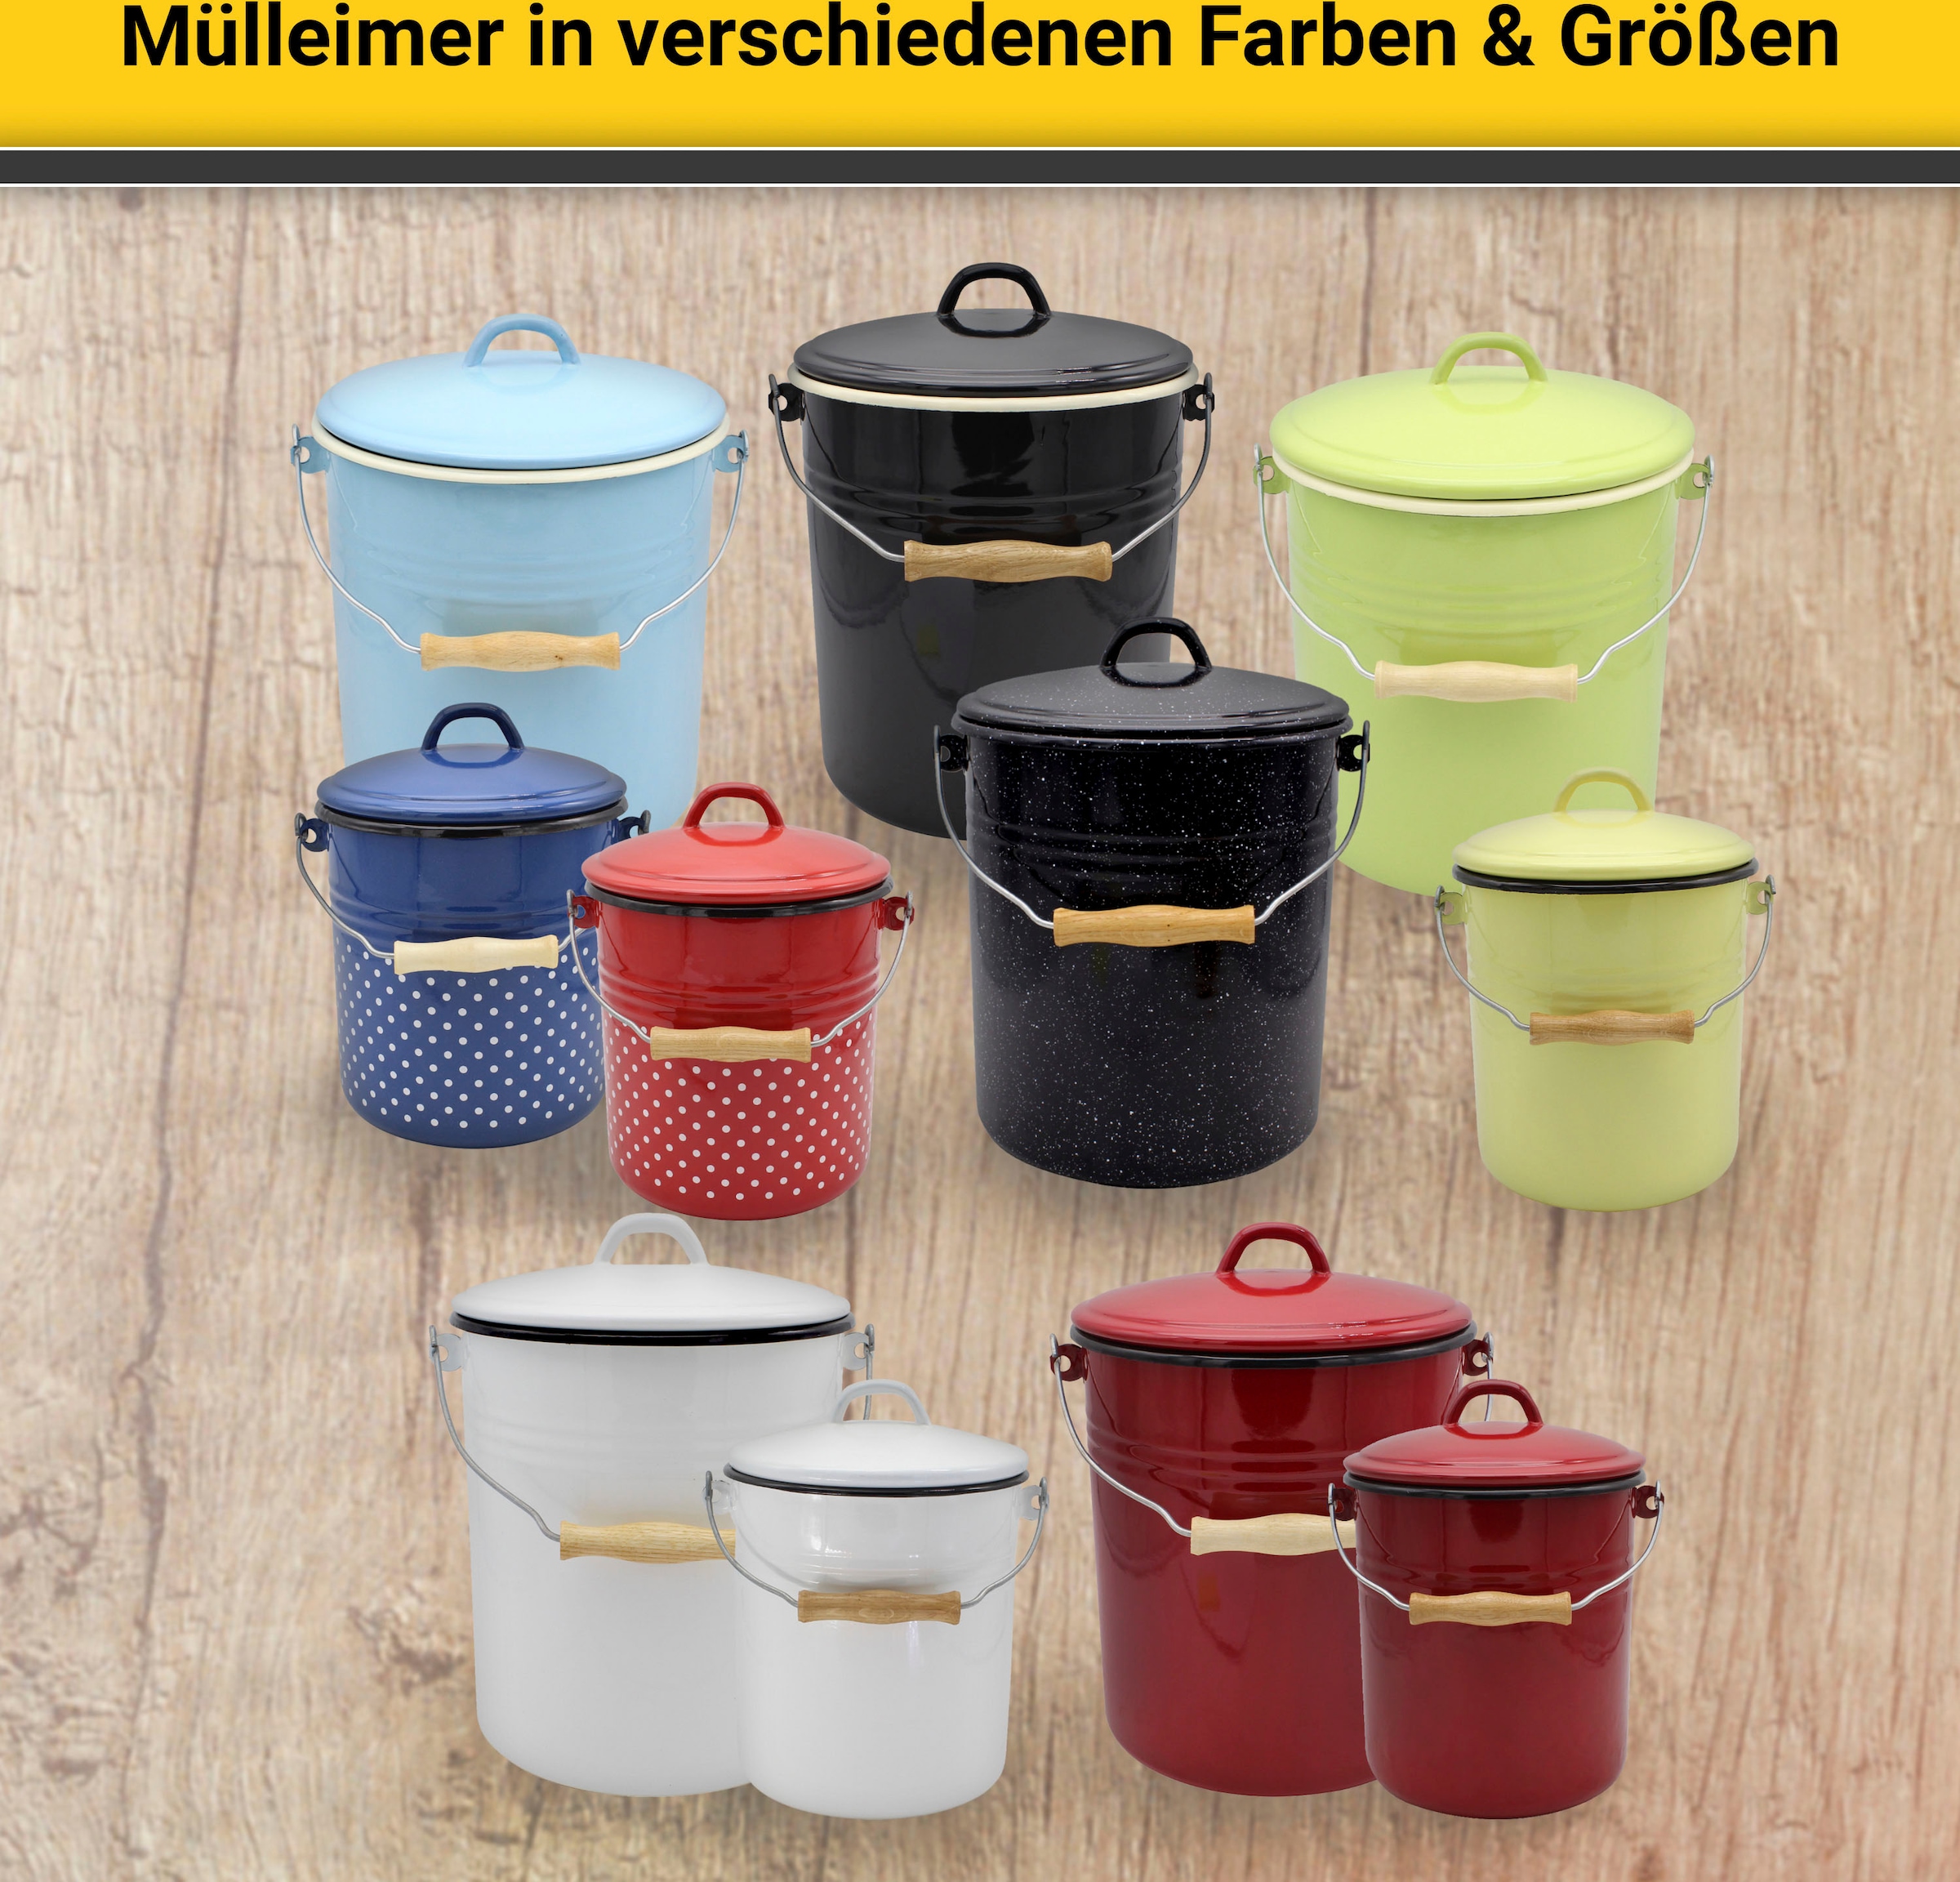 1 Behälter, Emaille, online bestellen Krüger Europe Made in »Husum«, Liter, 3 Mülleimer